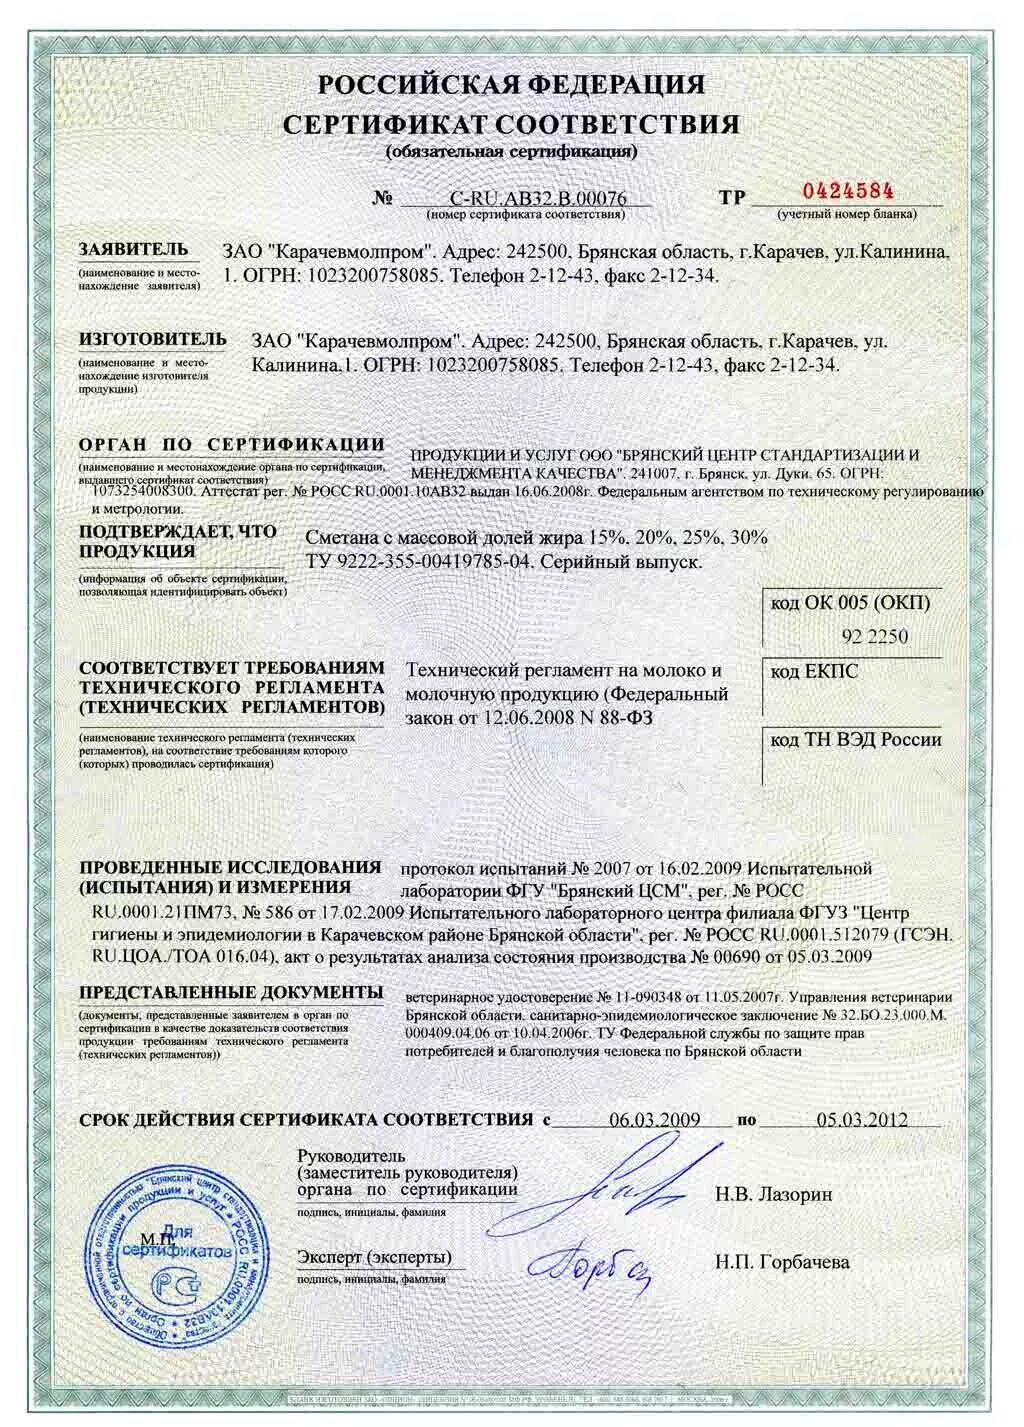 Бульдозер ЧЕТРА сертификат соответствия. Сертификат соответствия на молоко. Сертификат соответствия на молочную продукцию. Сертификат соответствия на творог.